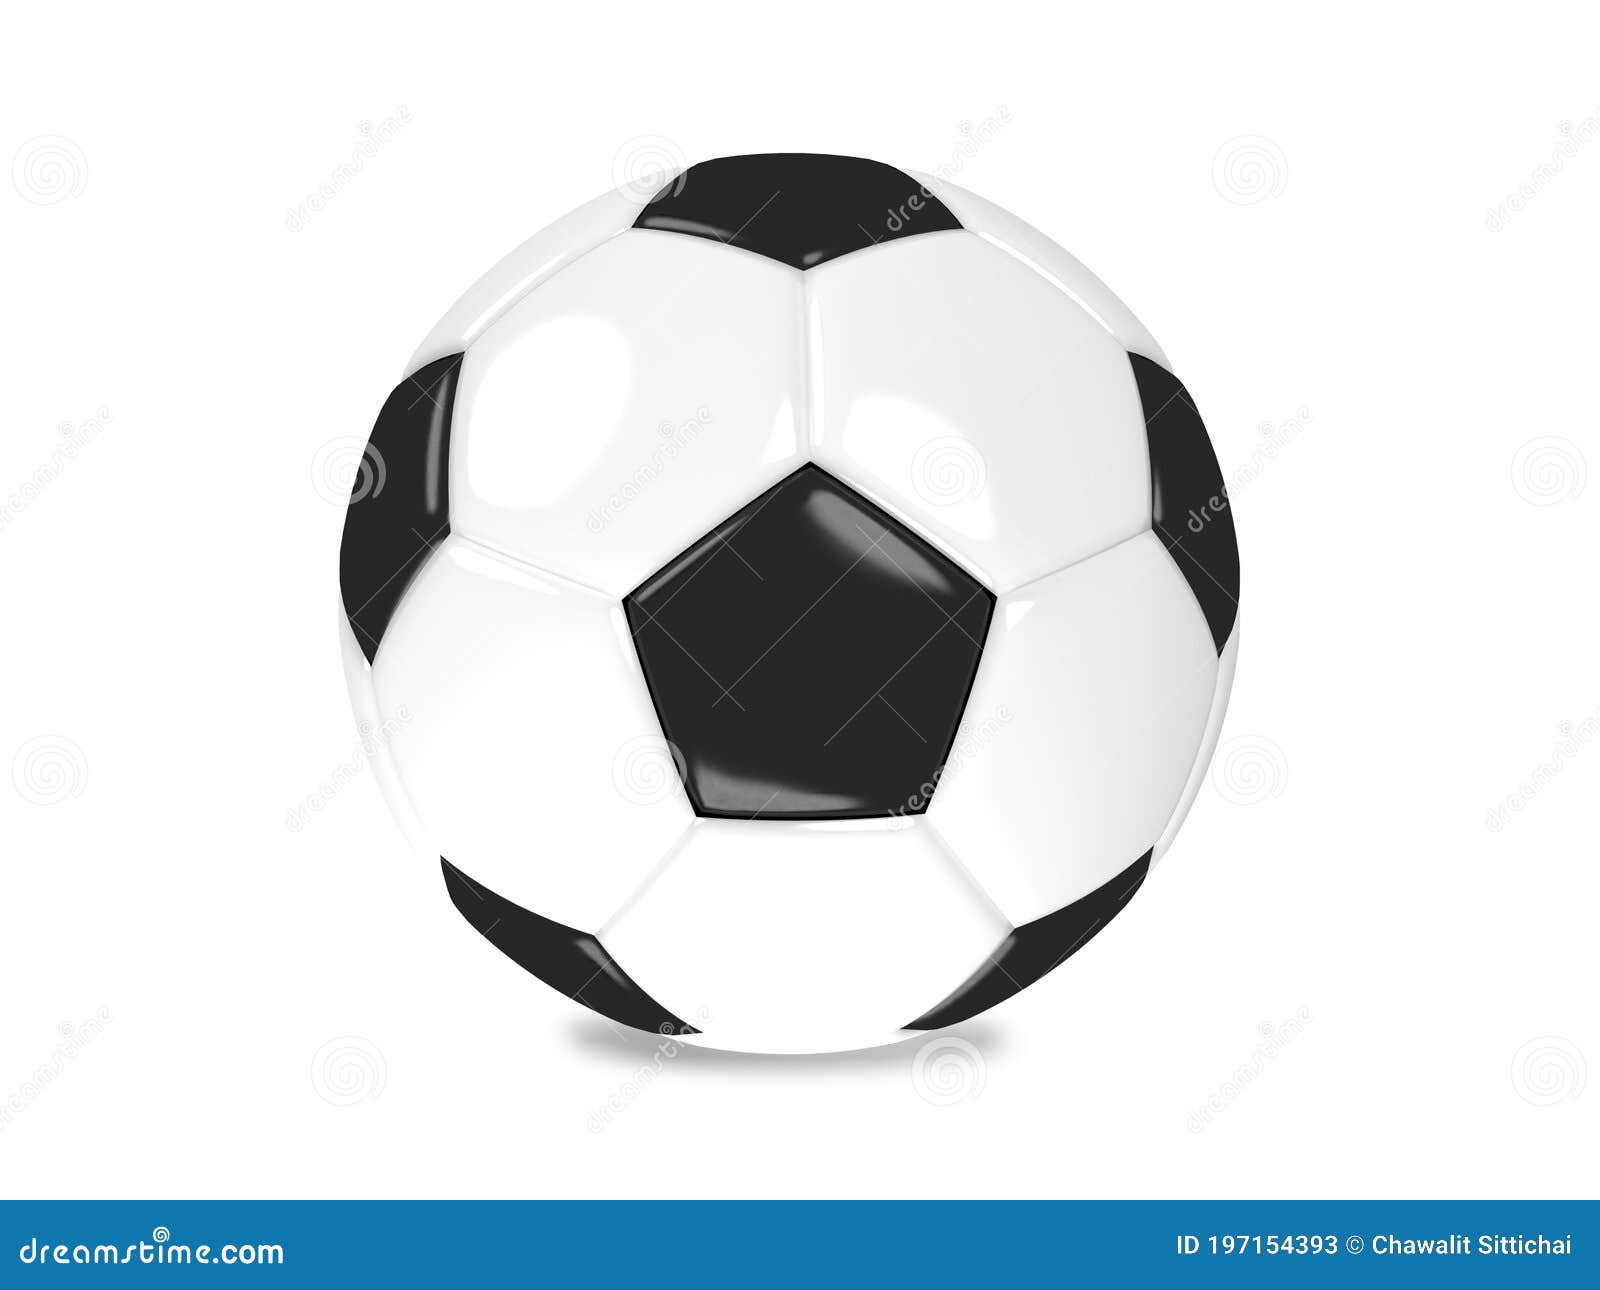 Футбол чб высшая лига. Мяч футбольный классический белый. Футбольный мяч со звездами вектор. Нарисовать 3д футбол. Футбольный мяч в развернутом виде.